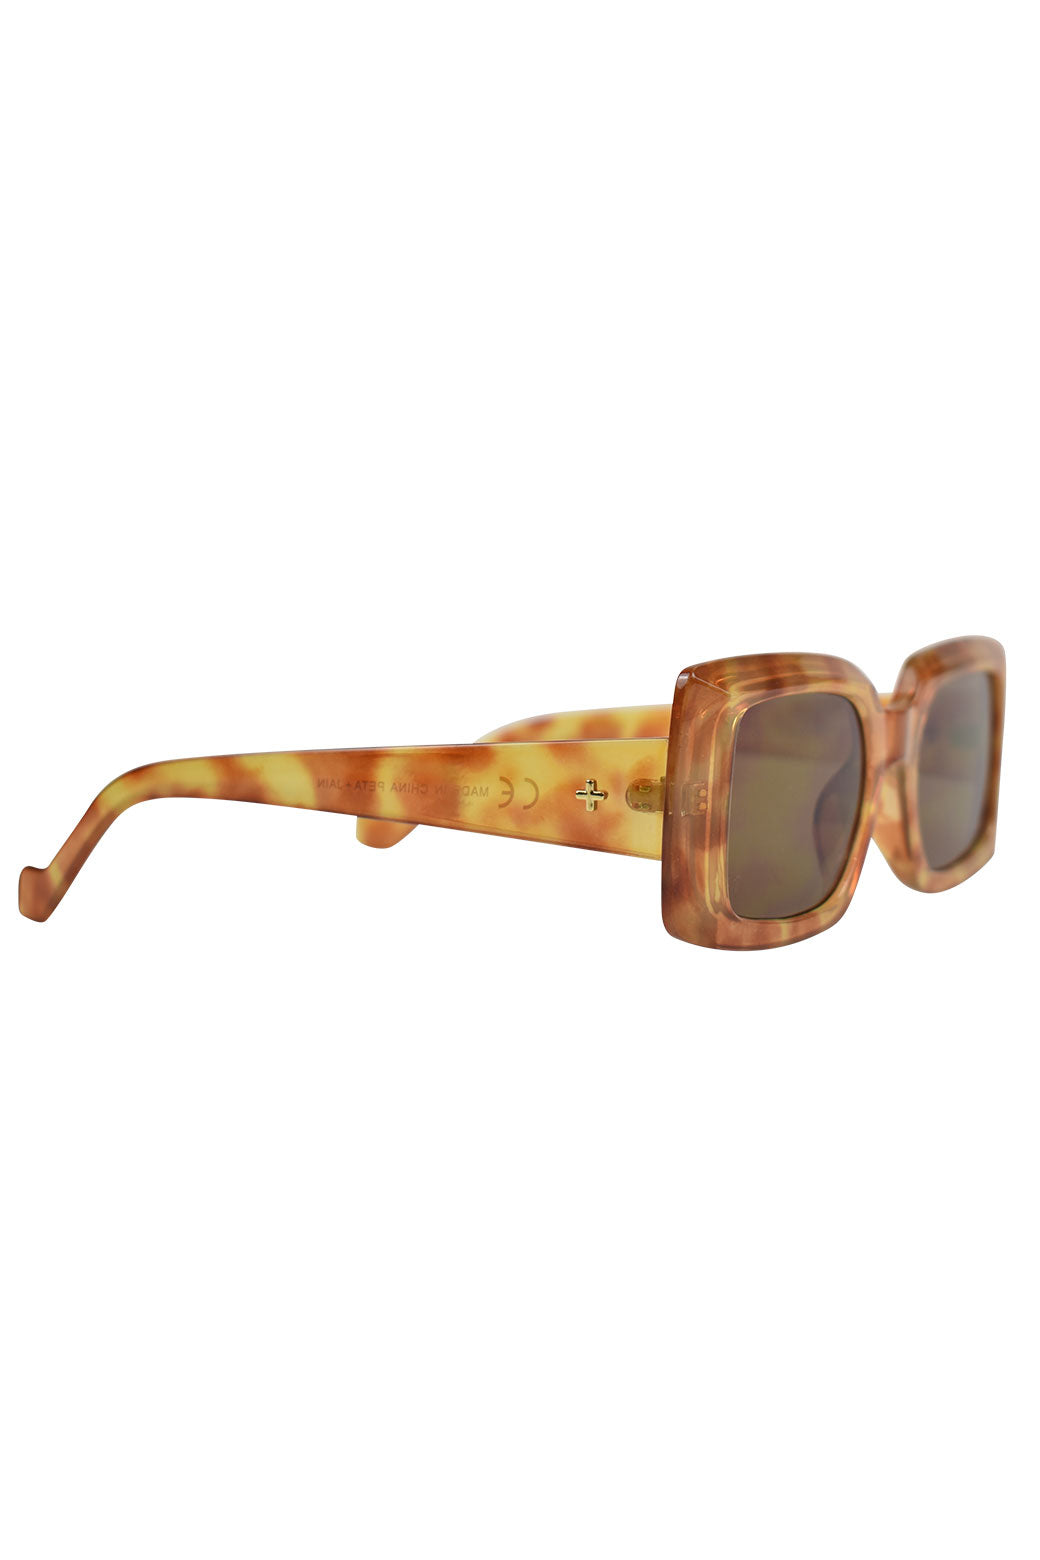 Peta + Jain Lopez Sunglasses Tort Brown